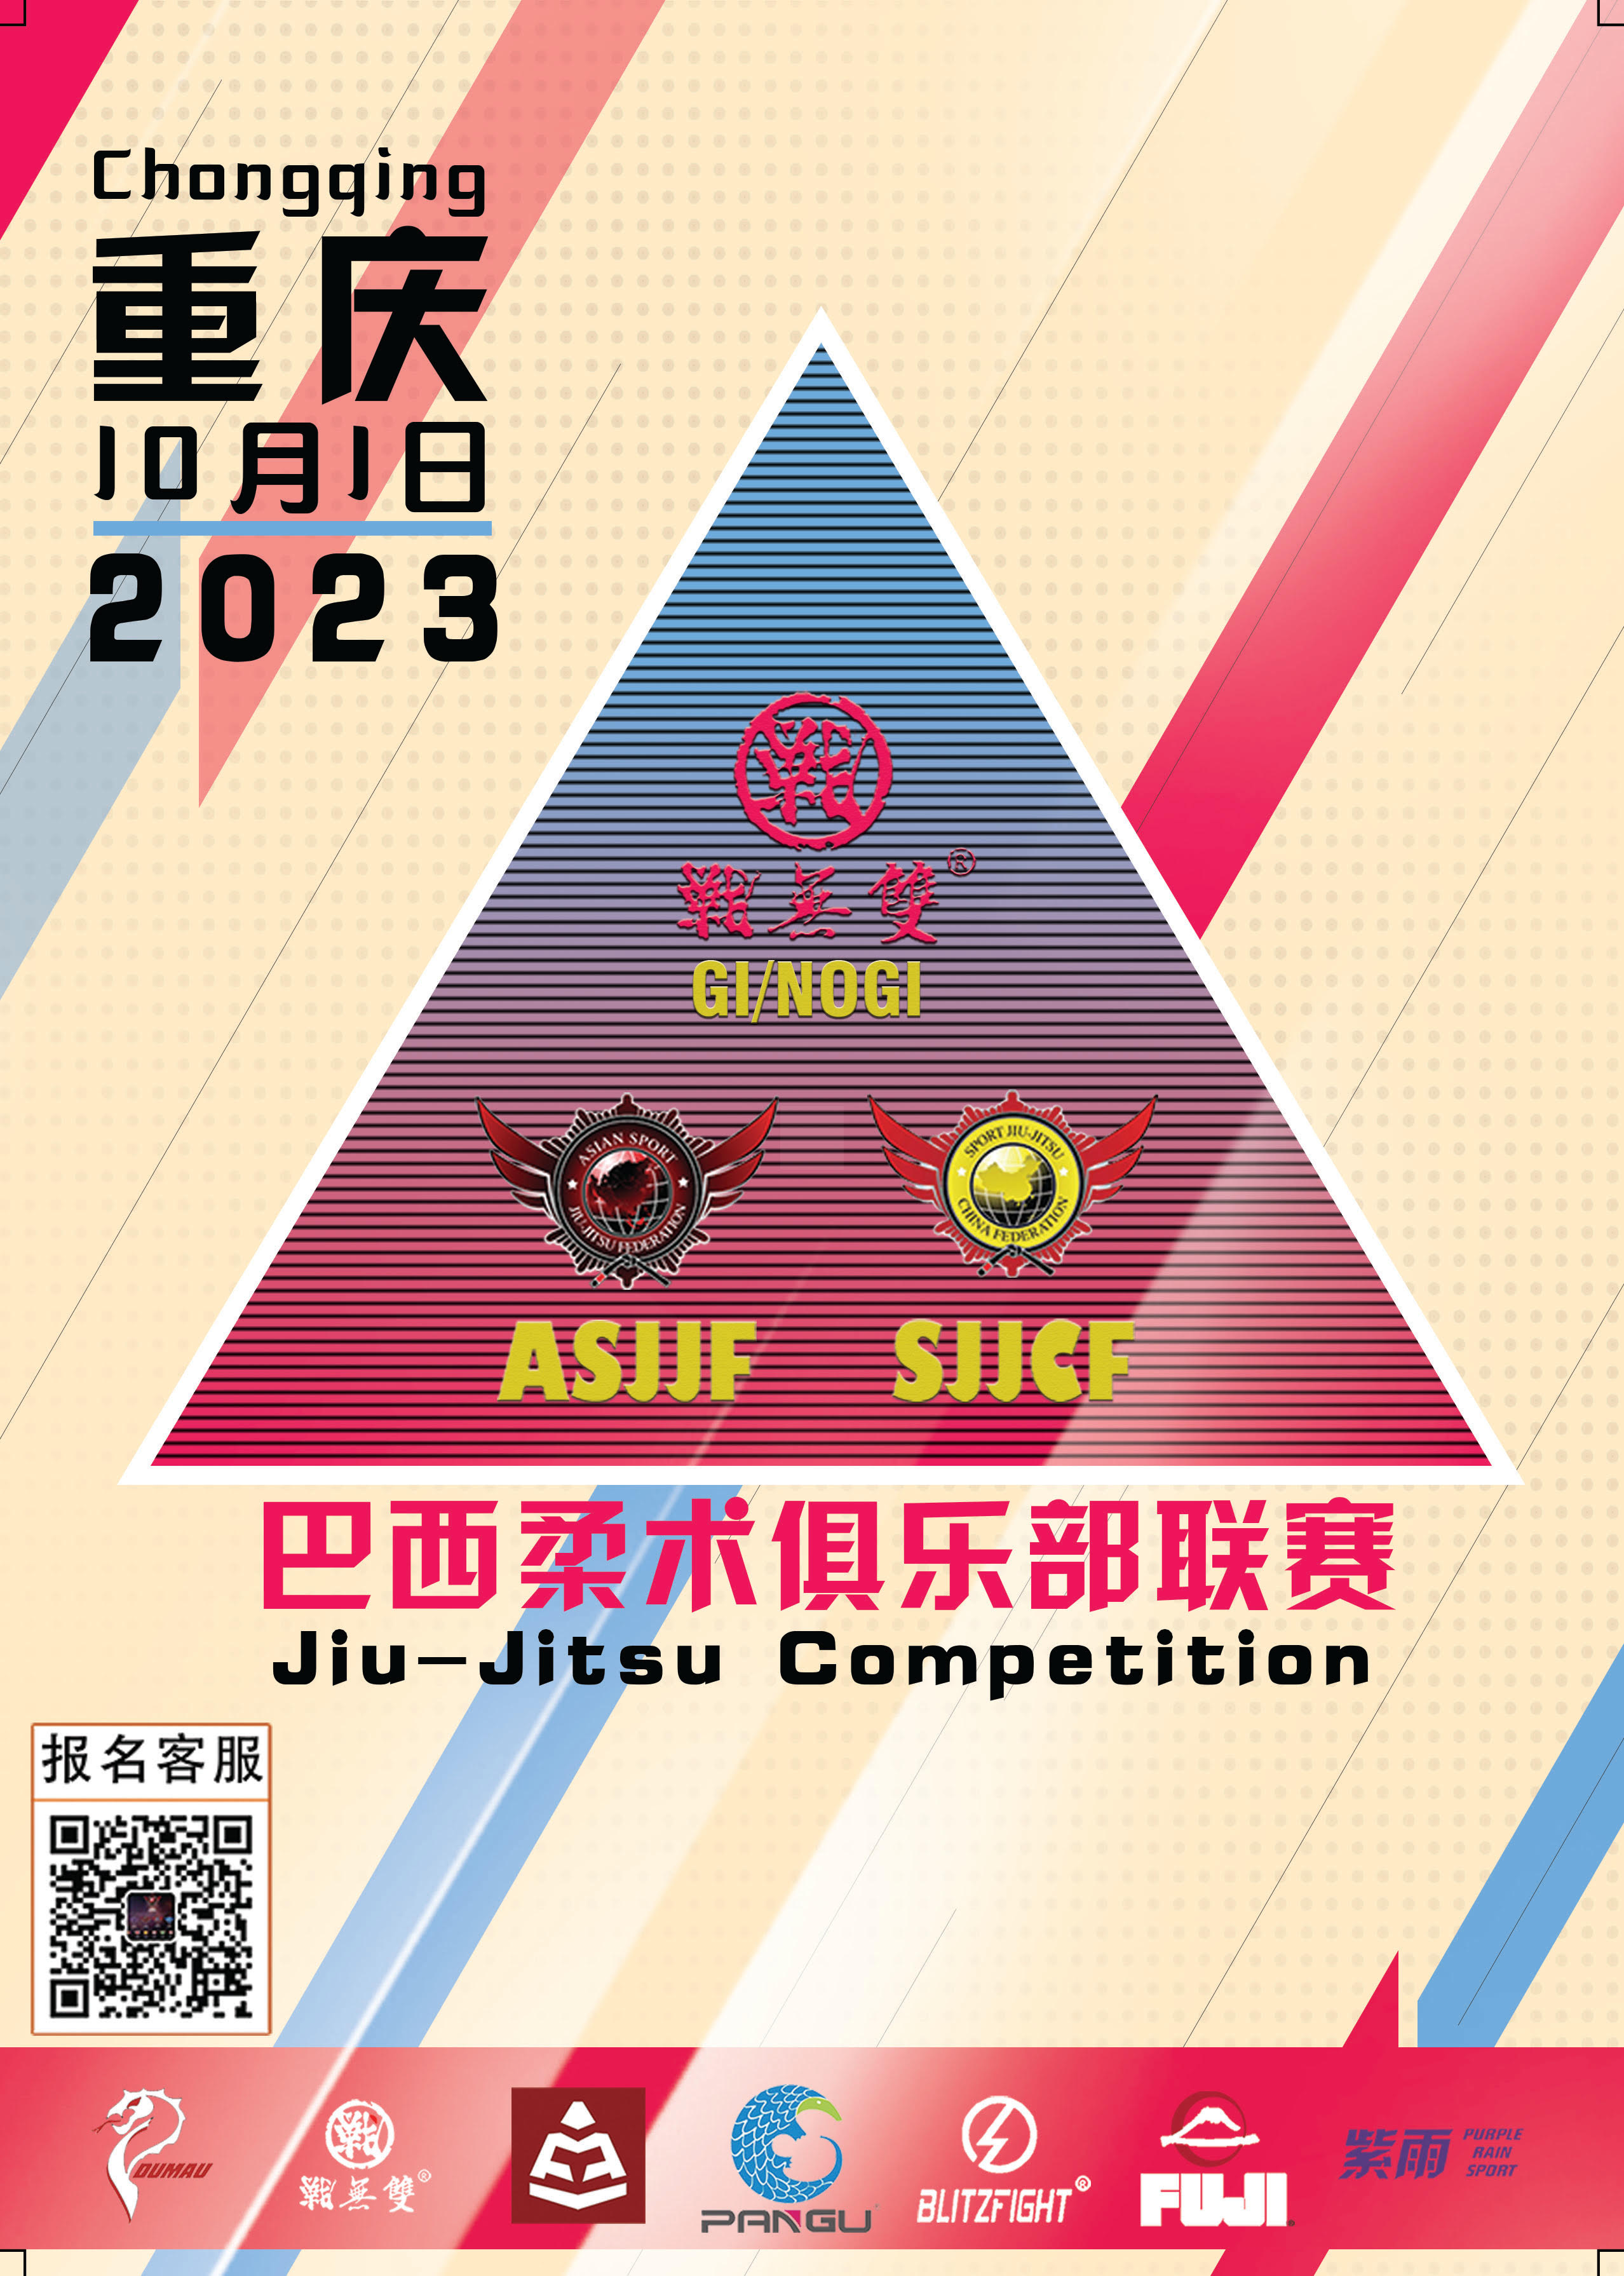 sjjcf chongqing no-gi championship 2023